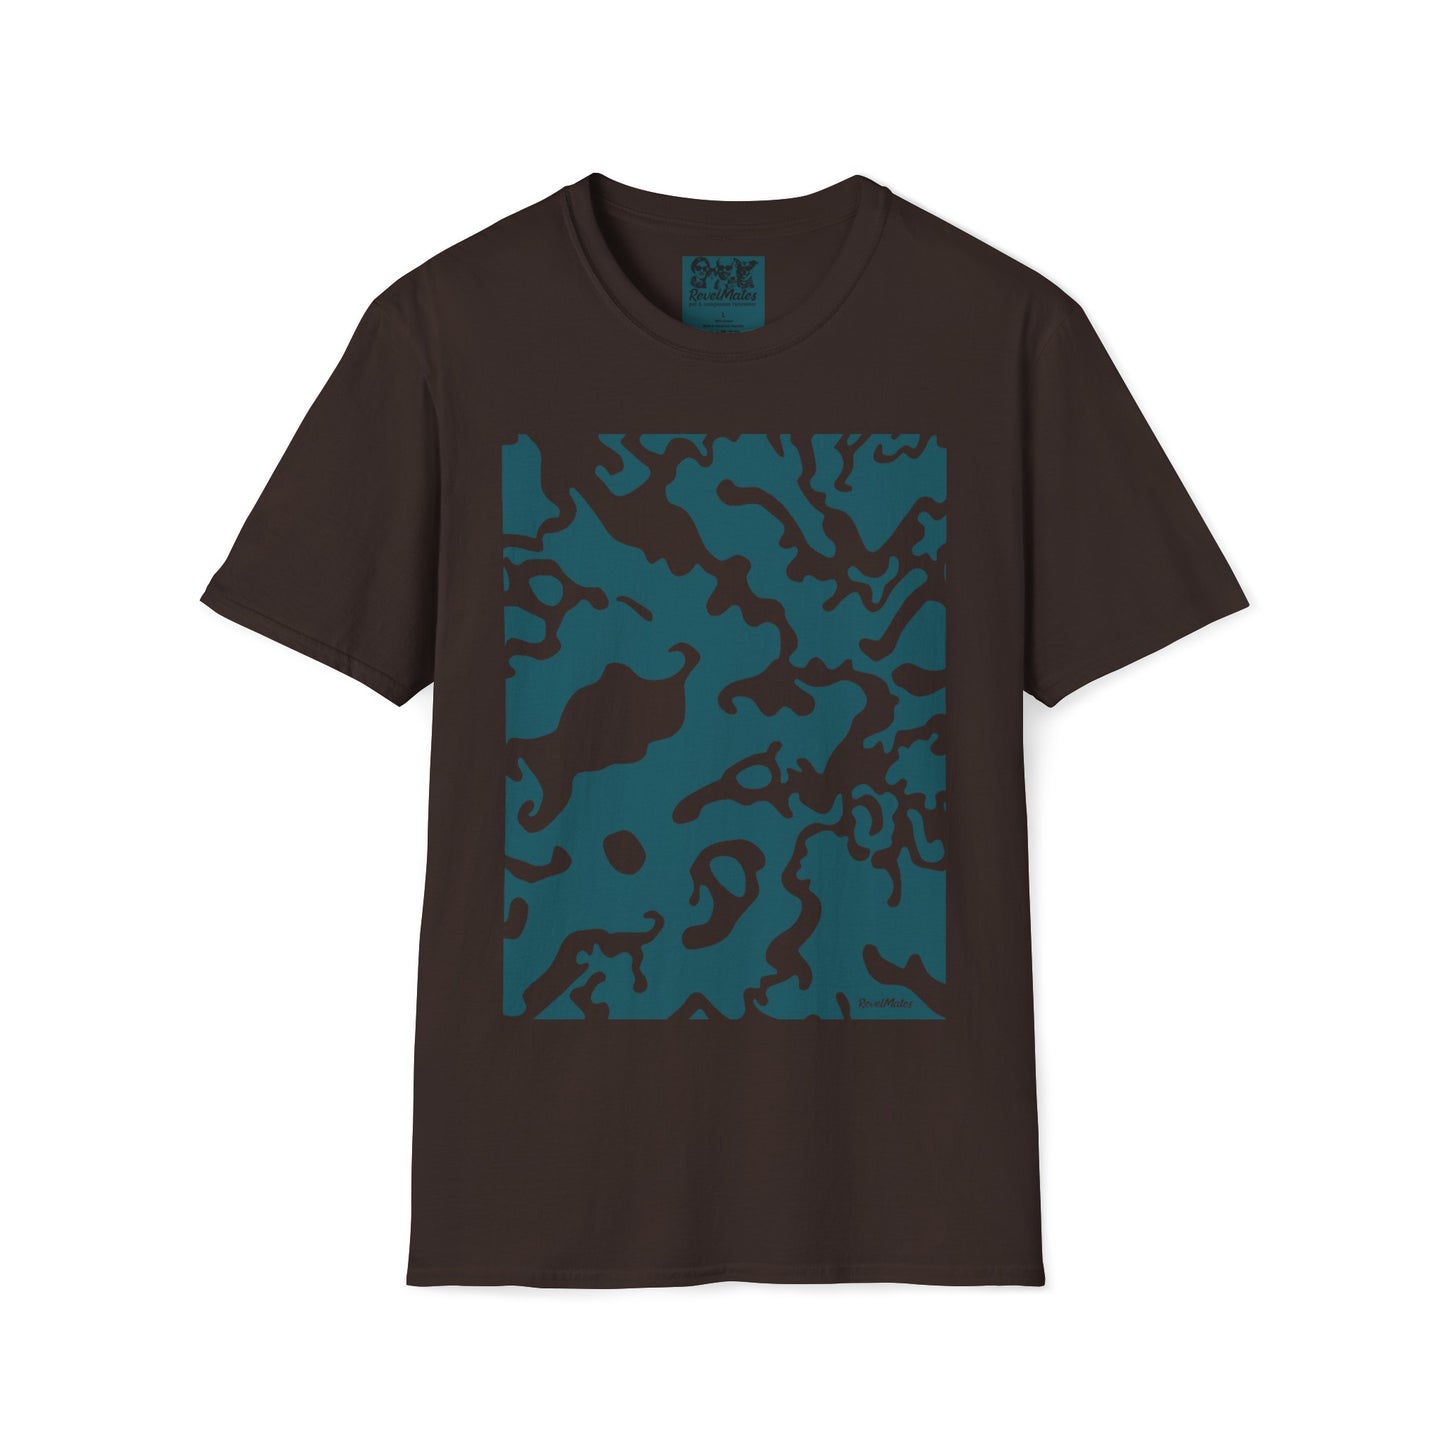 Unisex Softstyle T-Shirt | Camouflage Design